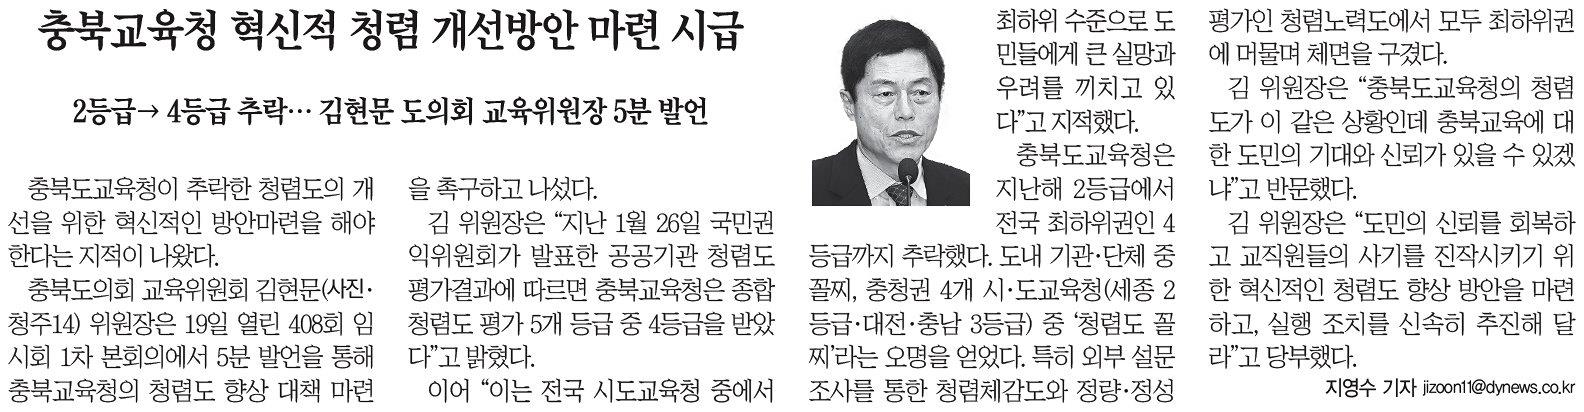 김현문 의원, 충북교육청 혁신적 청렴 개선방안 마련해야 - 1